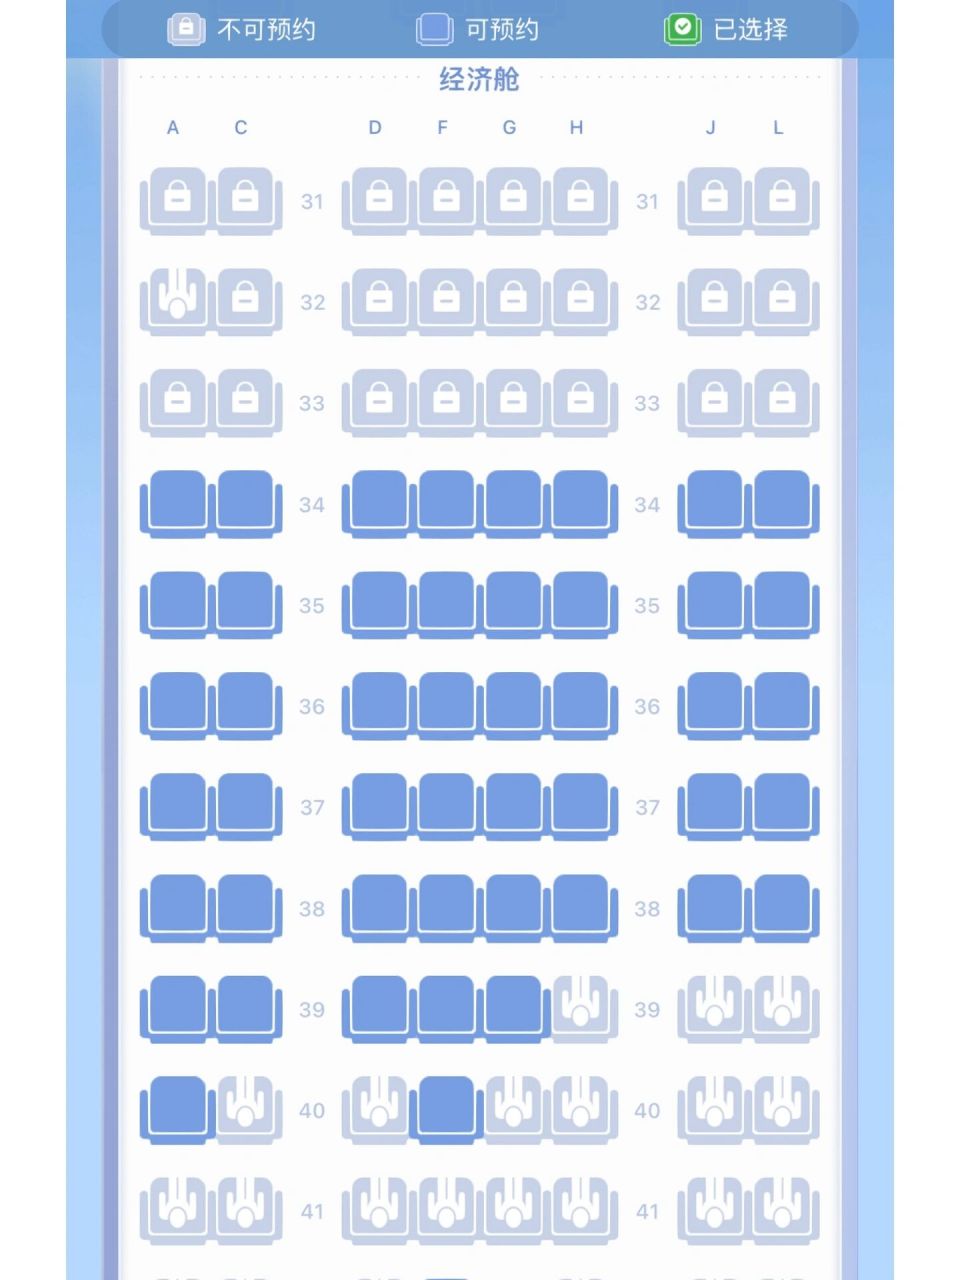 祥鹏空客330机型座位图图片